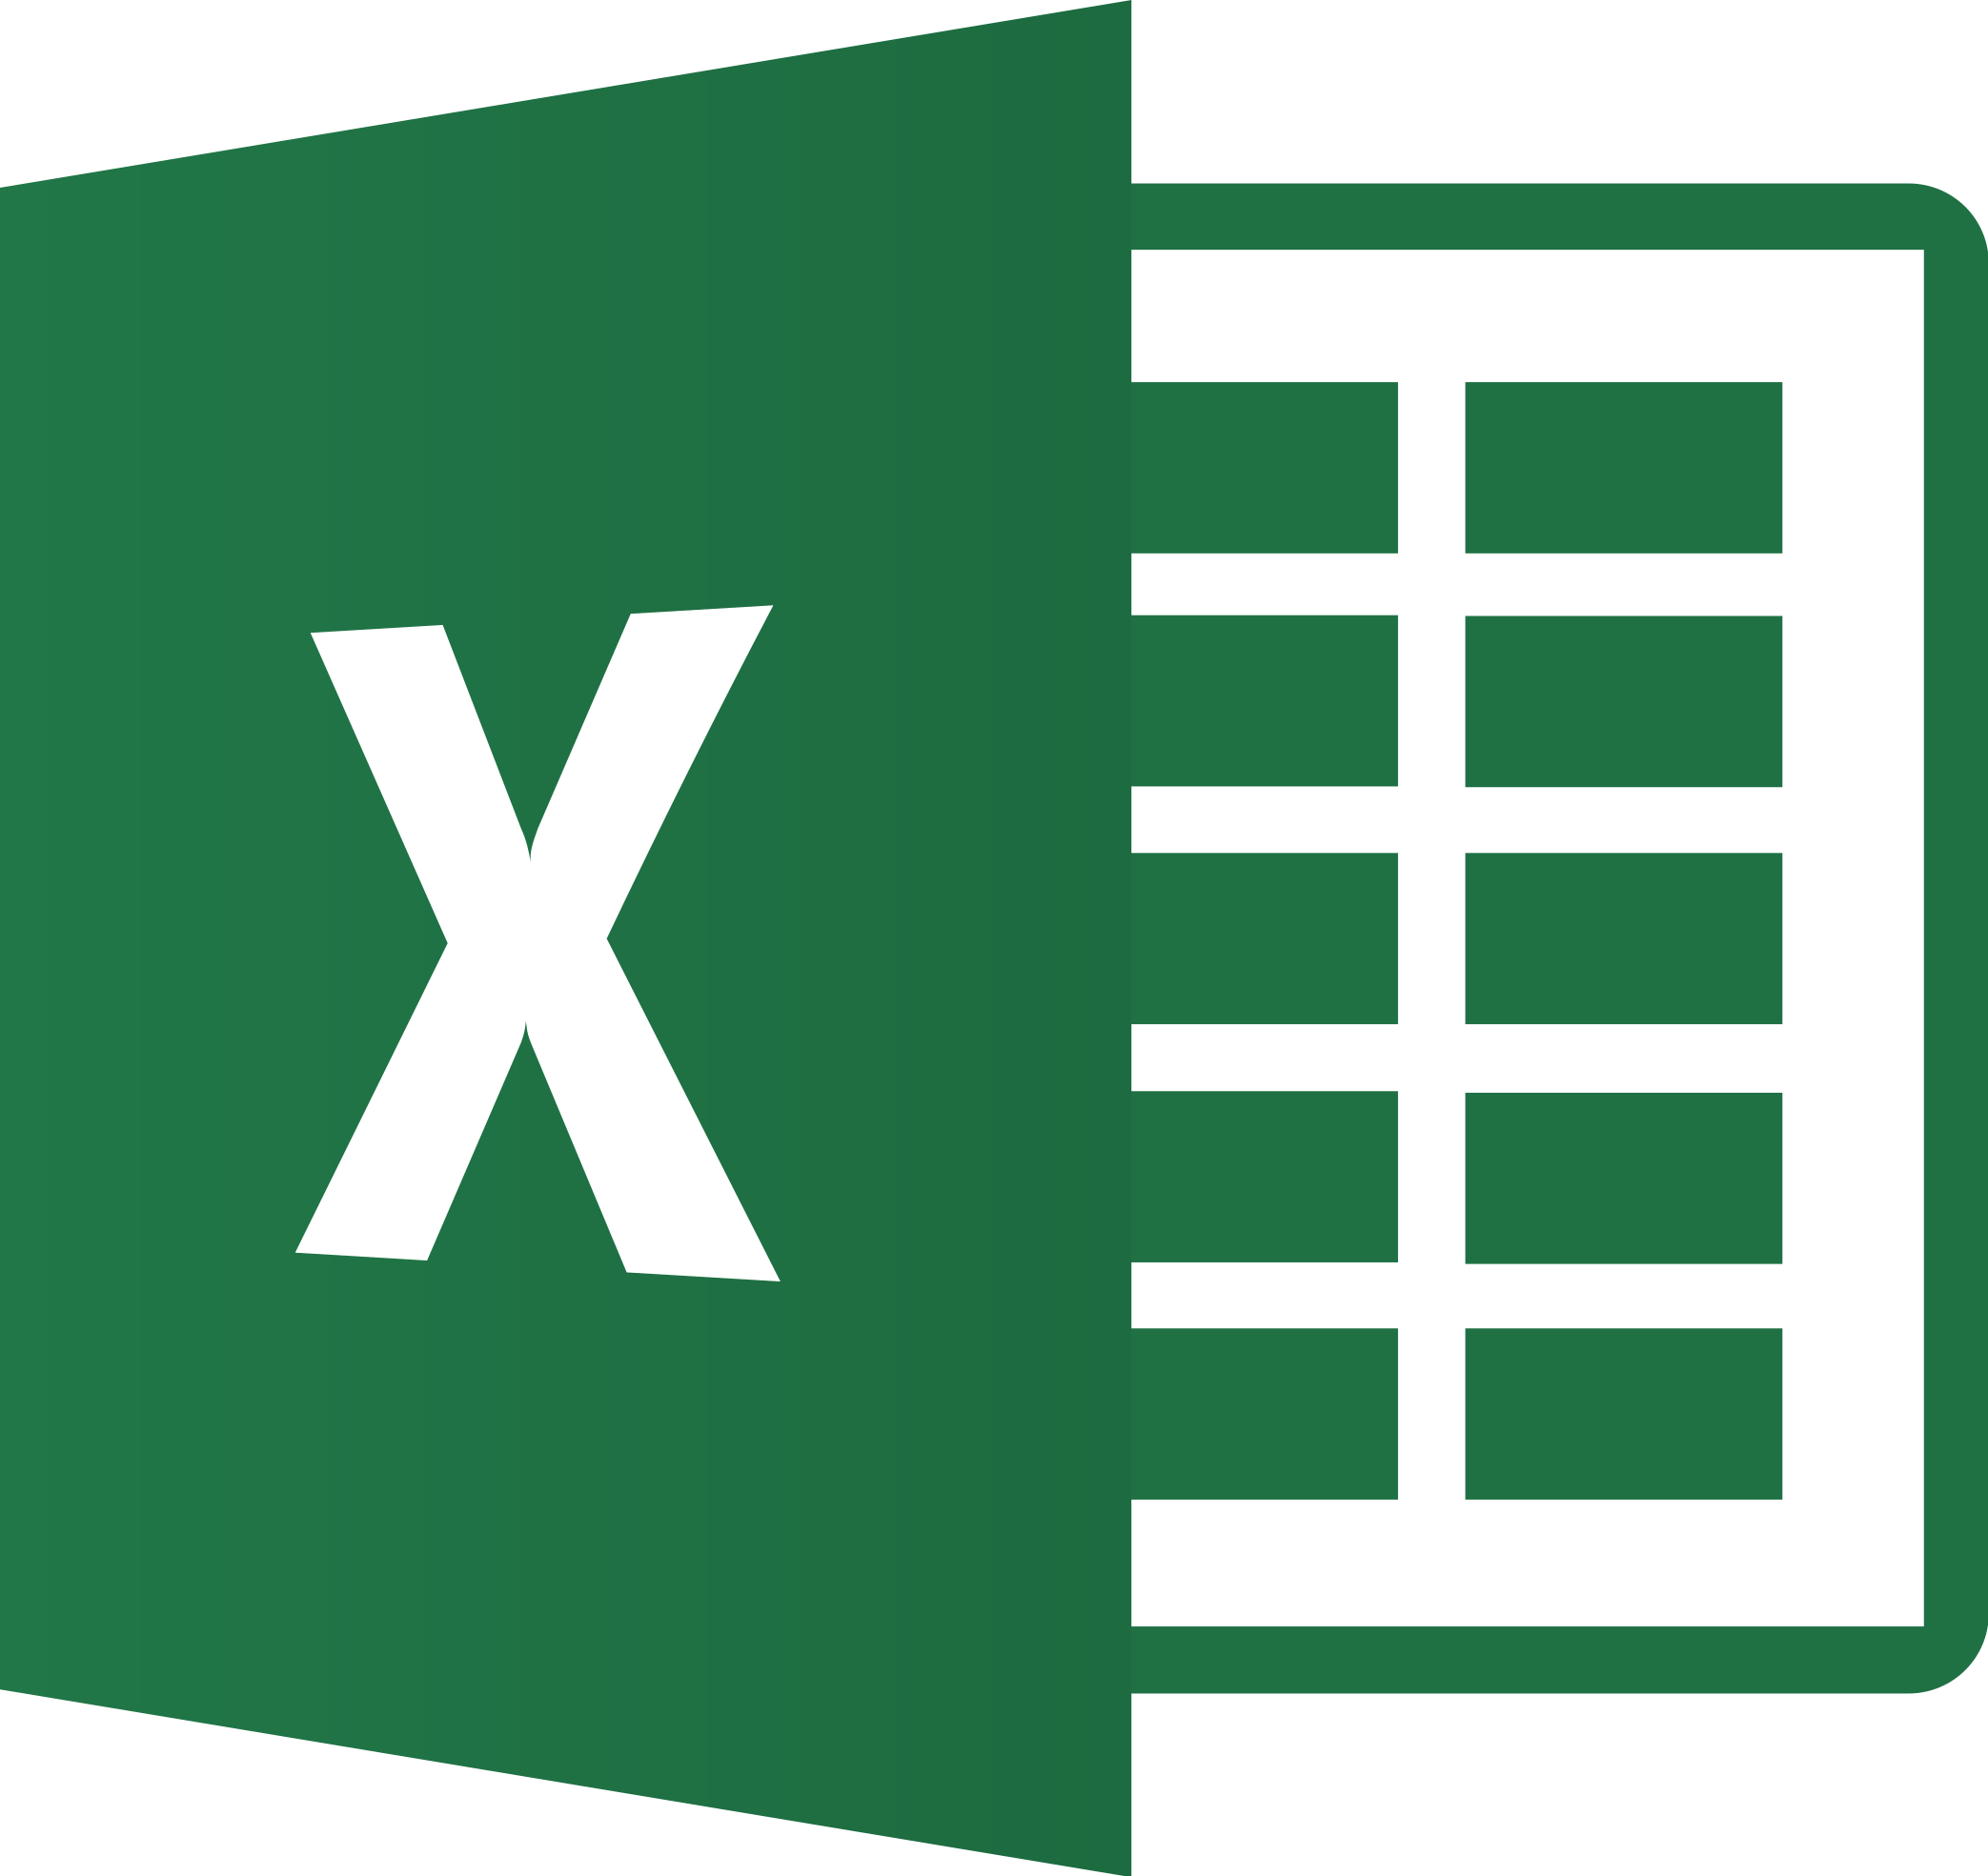 Excel Logo PNG Image